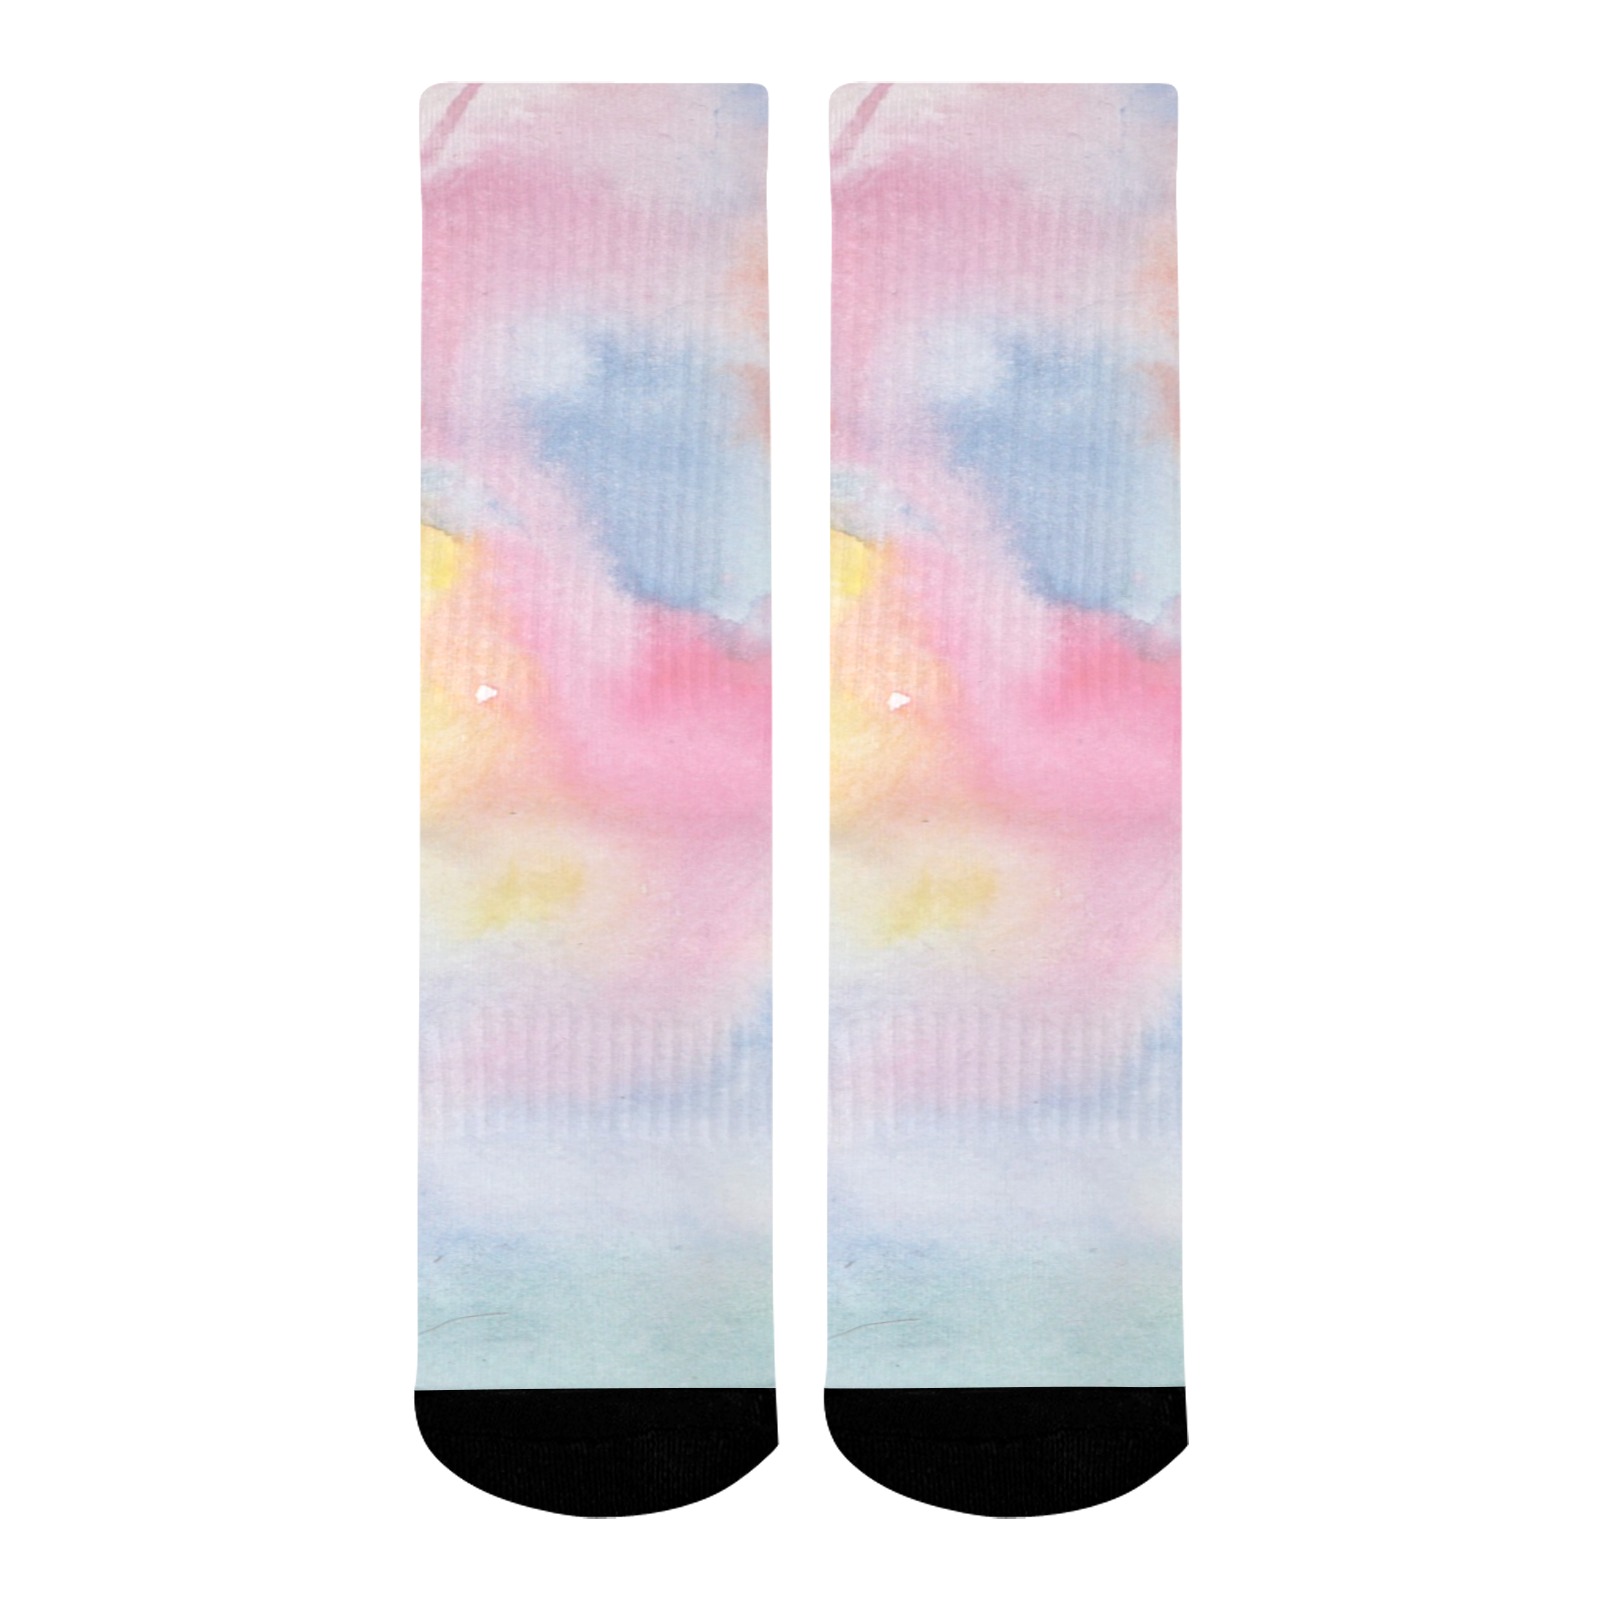 Colorful watercolor Mid-Calf Socks (Black Sole)